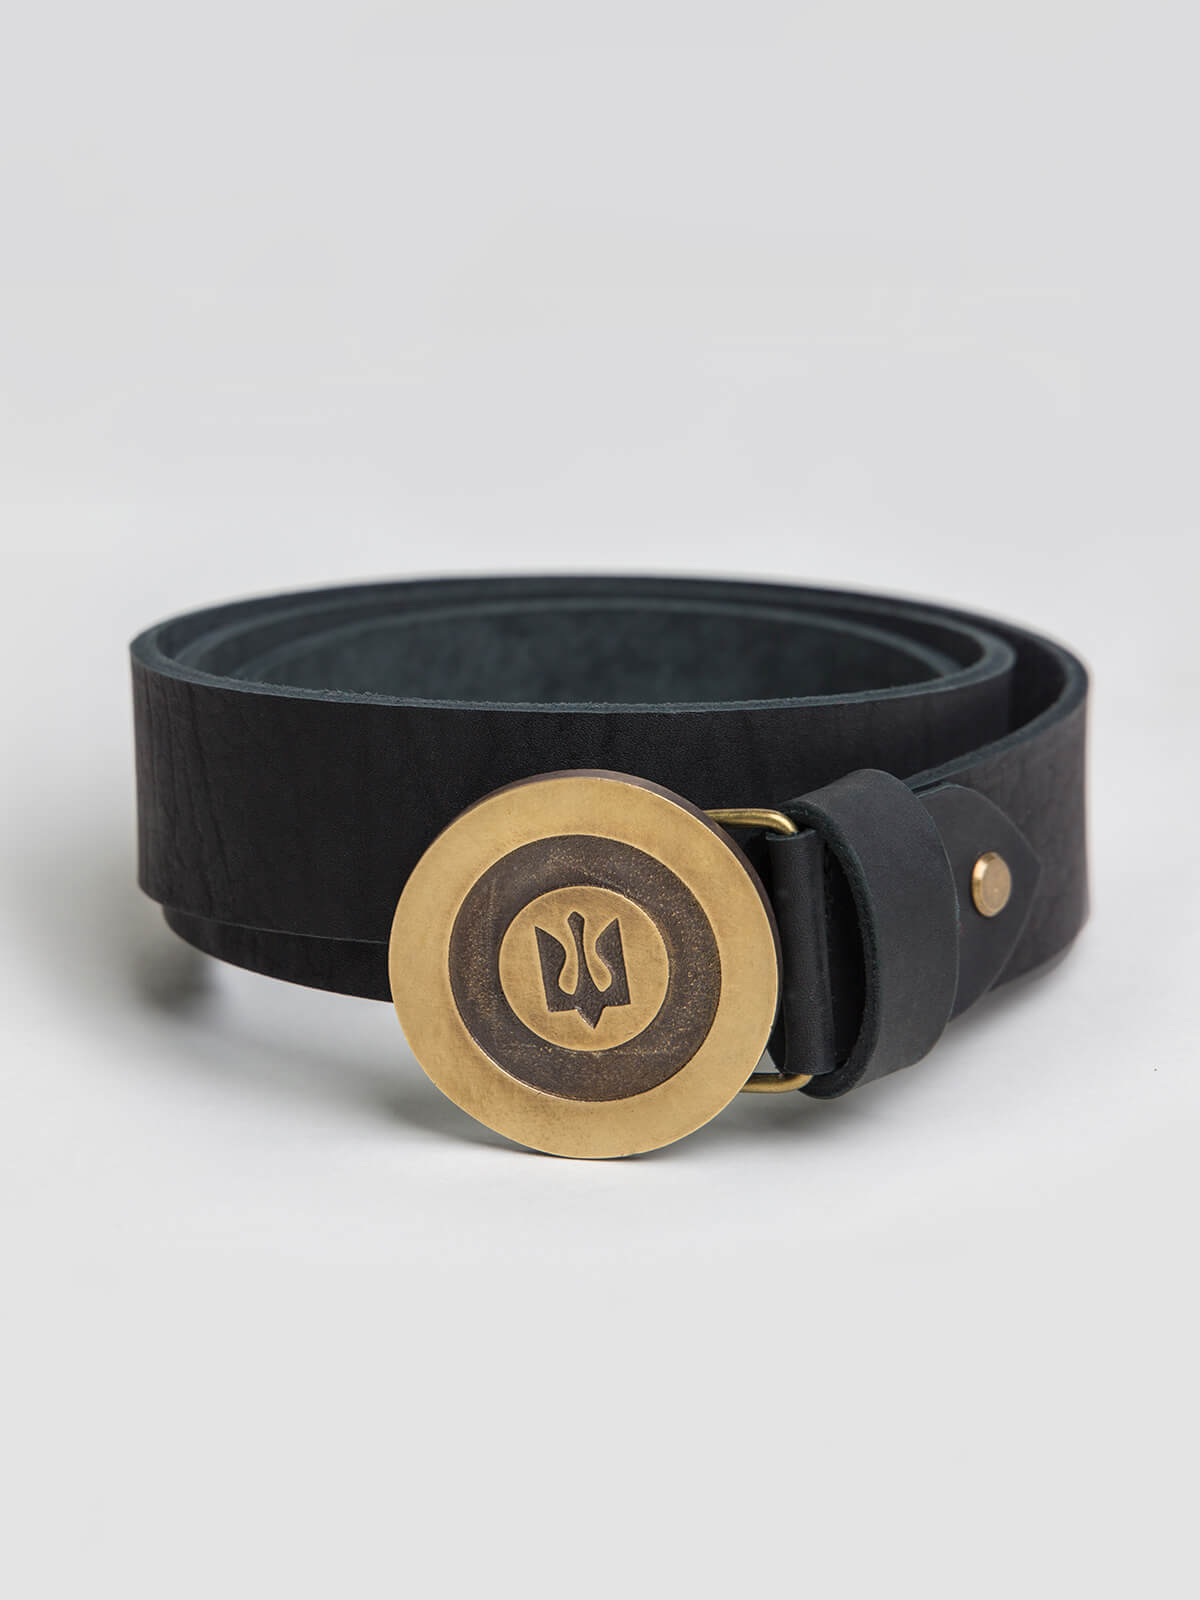 Belt Roundel. Color black. Material: leather, brass
Length of the belt: 120-130 cm.